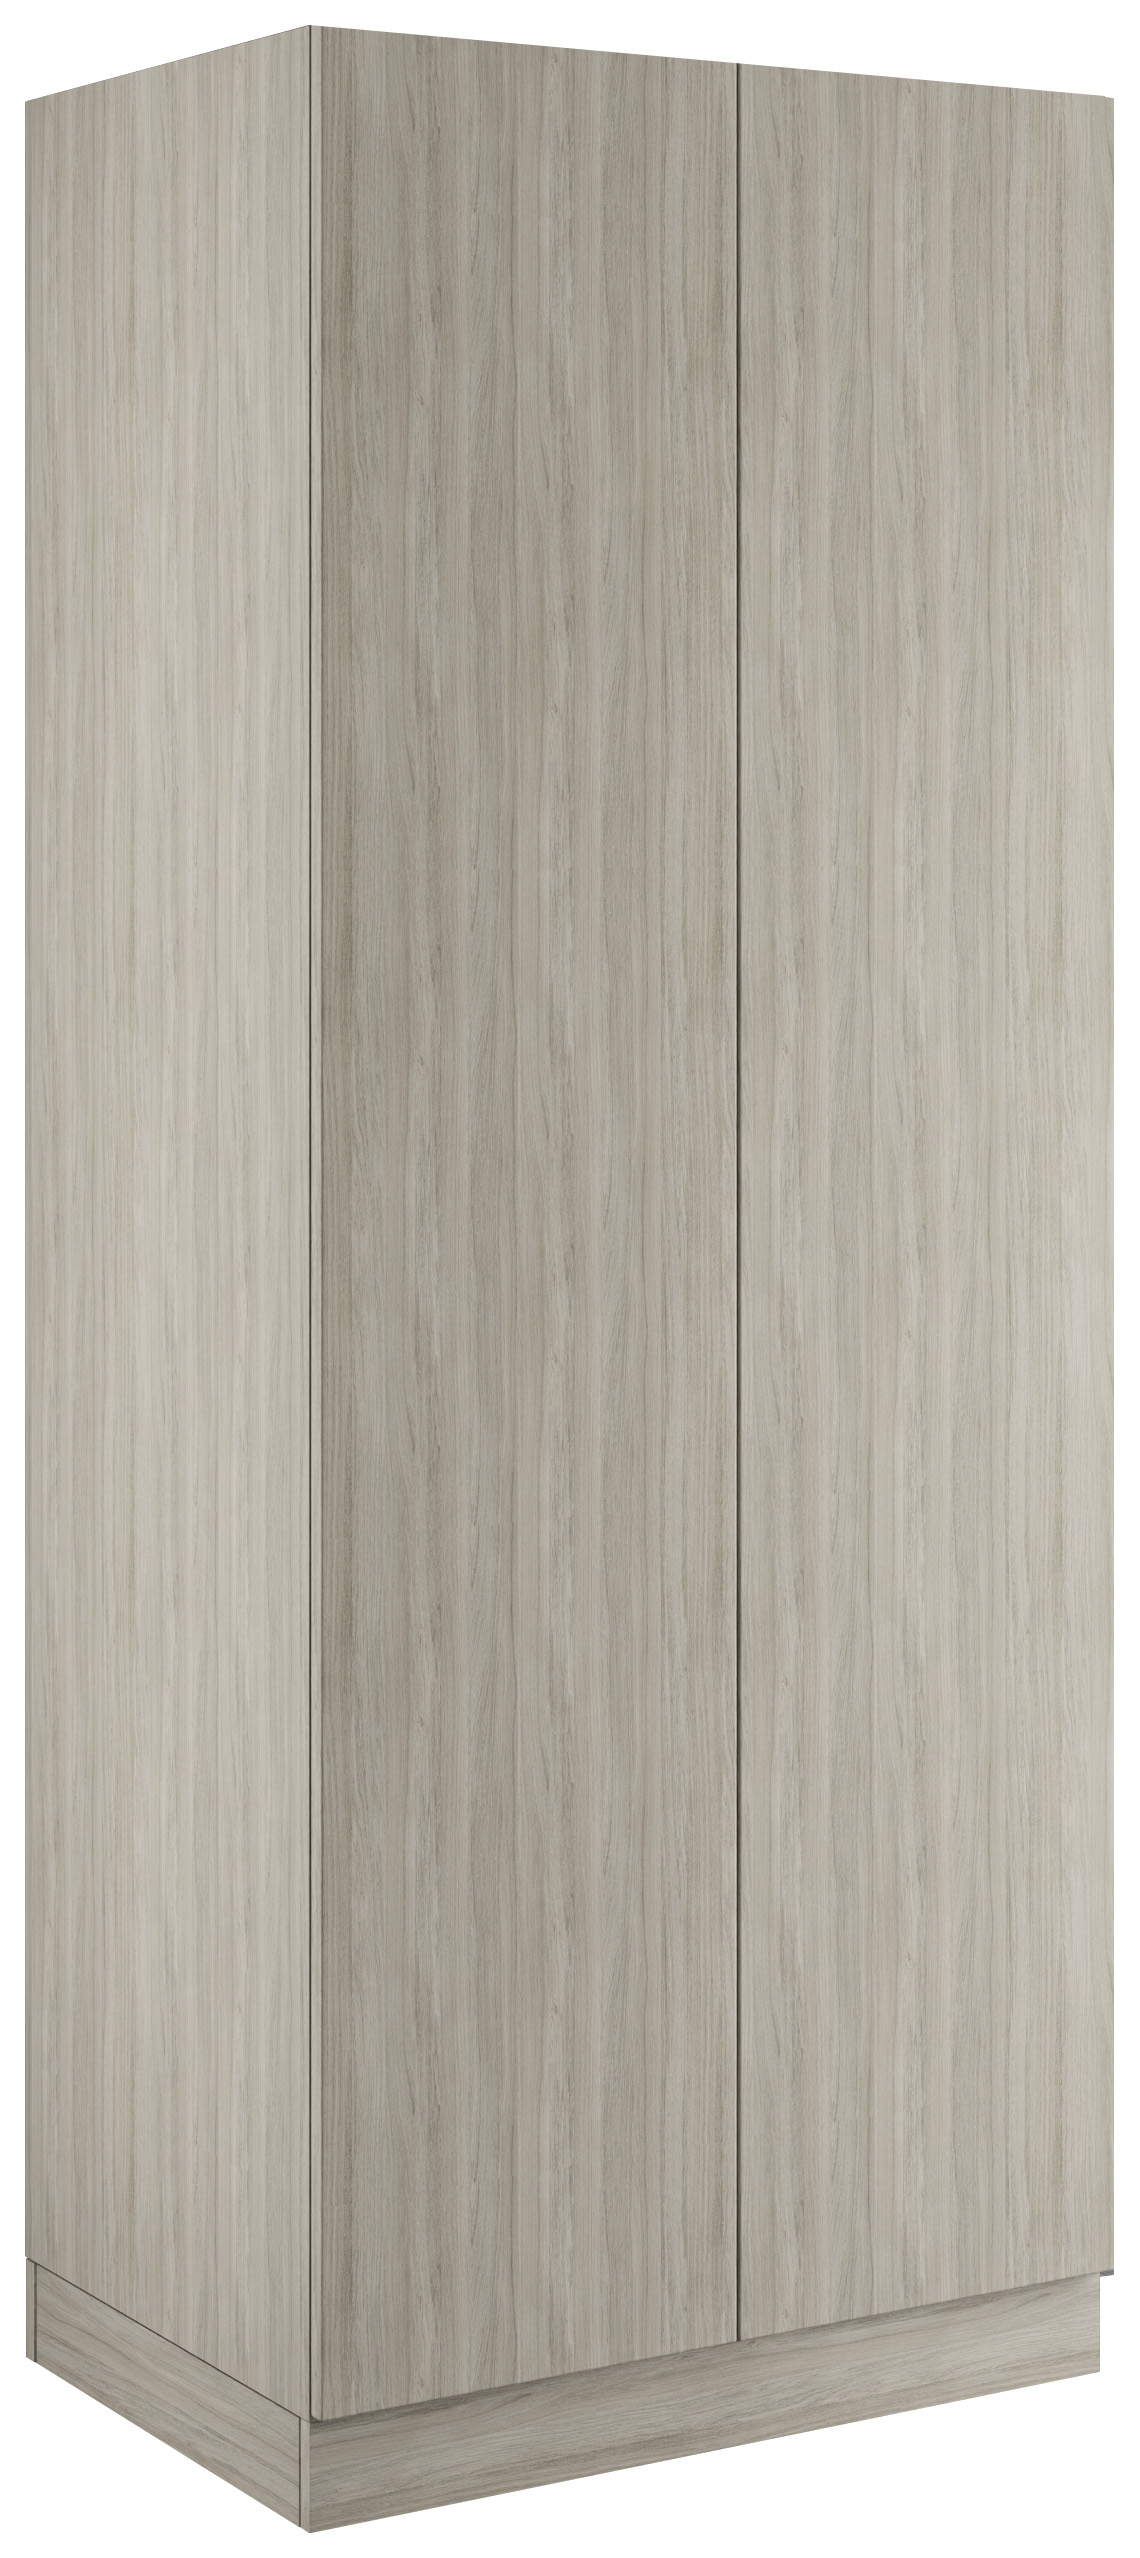 Malton Urban Oak Double Wardrobe with Single Rail & Shelves - 900 x 2260 x 608mm